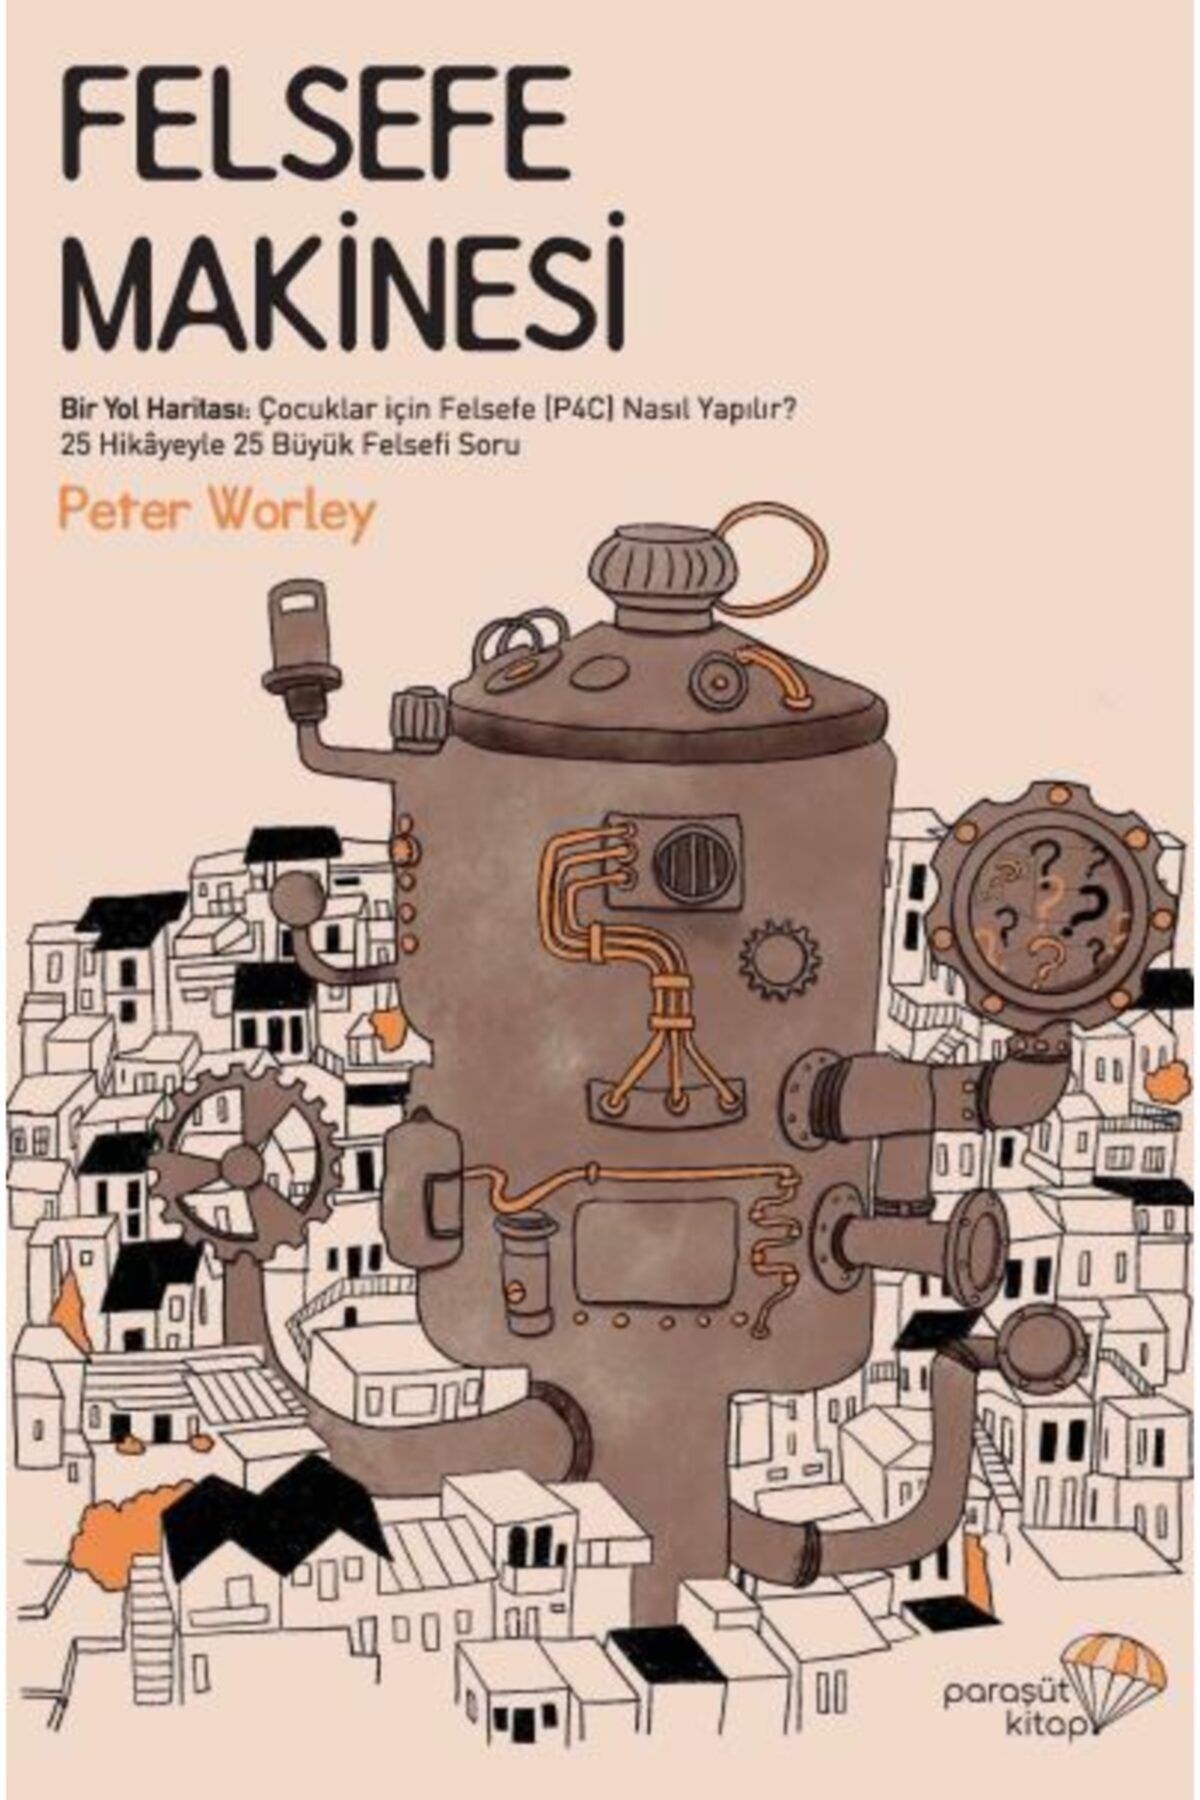 Paraşüt Kitap Felsefe Makinesi & Bir Yol Haritası: Çocuklar Için Felsefe (p4c) Nasıl Yapılır?